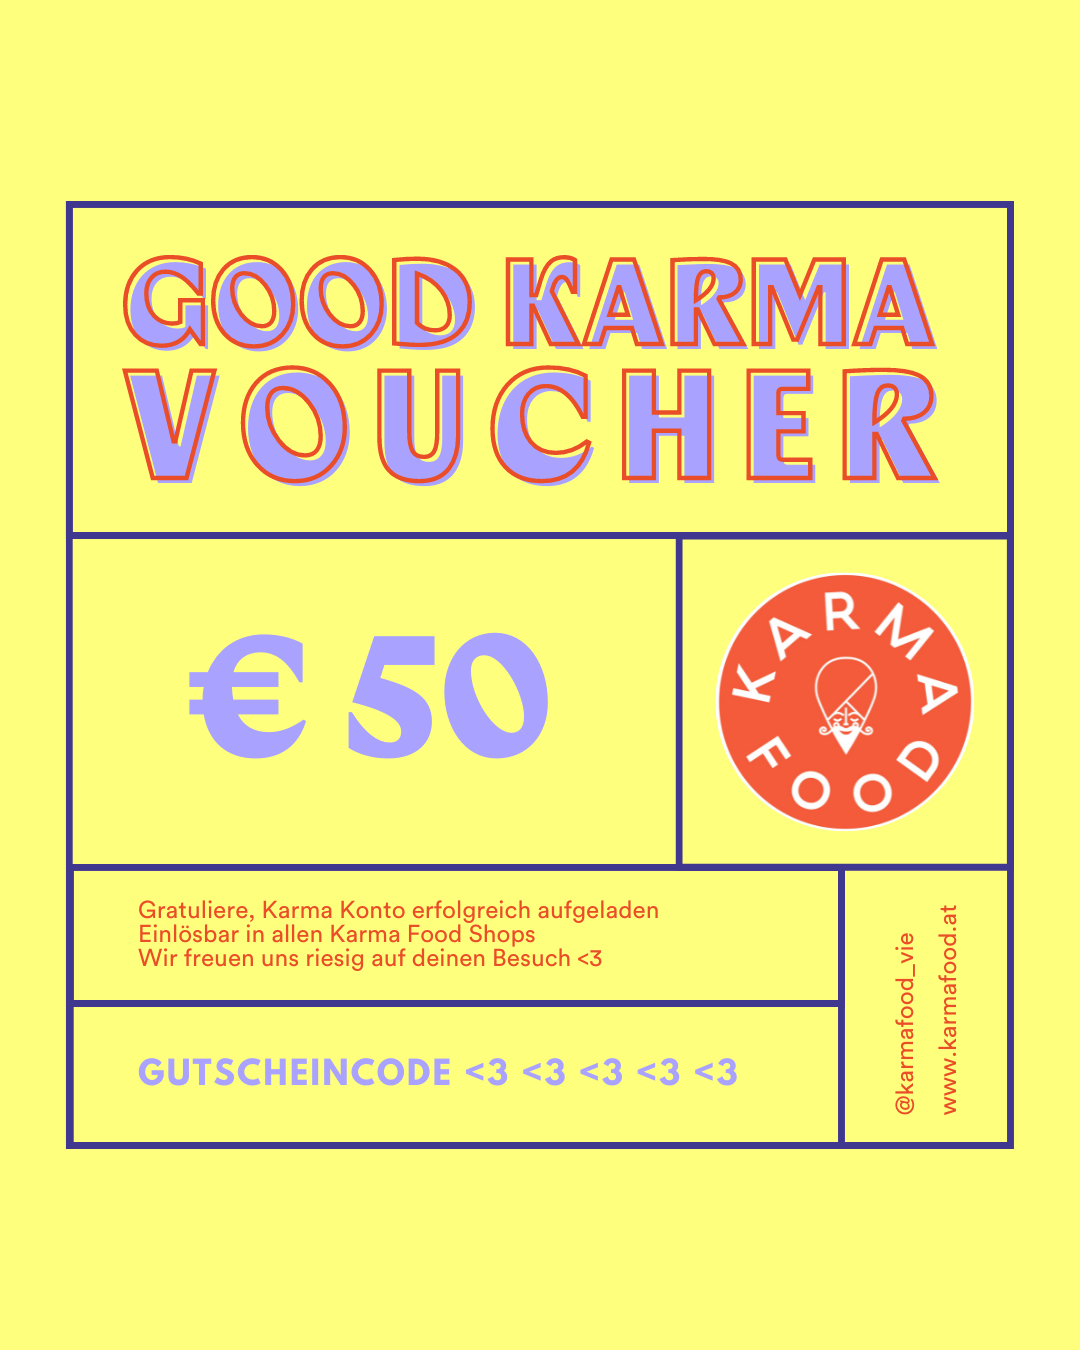 Good Karma Online Voucher